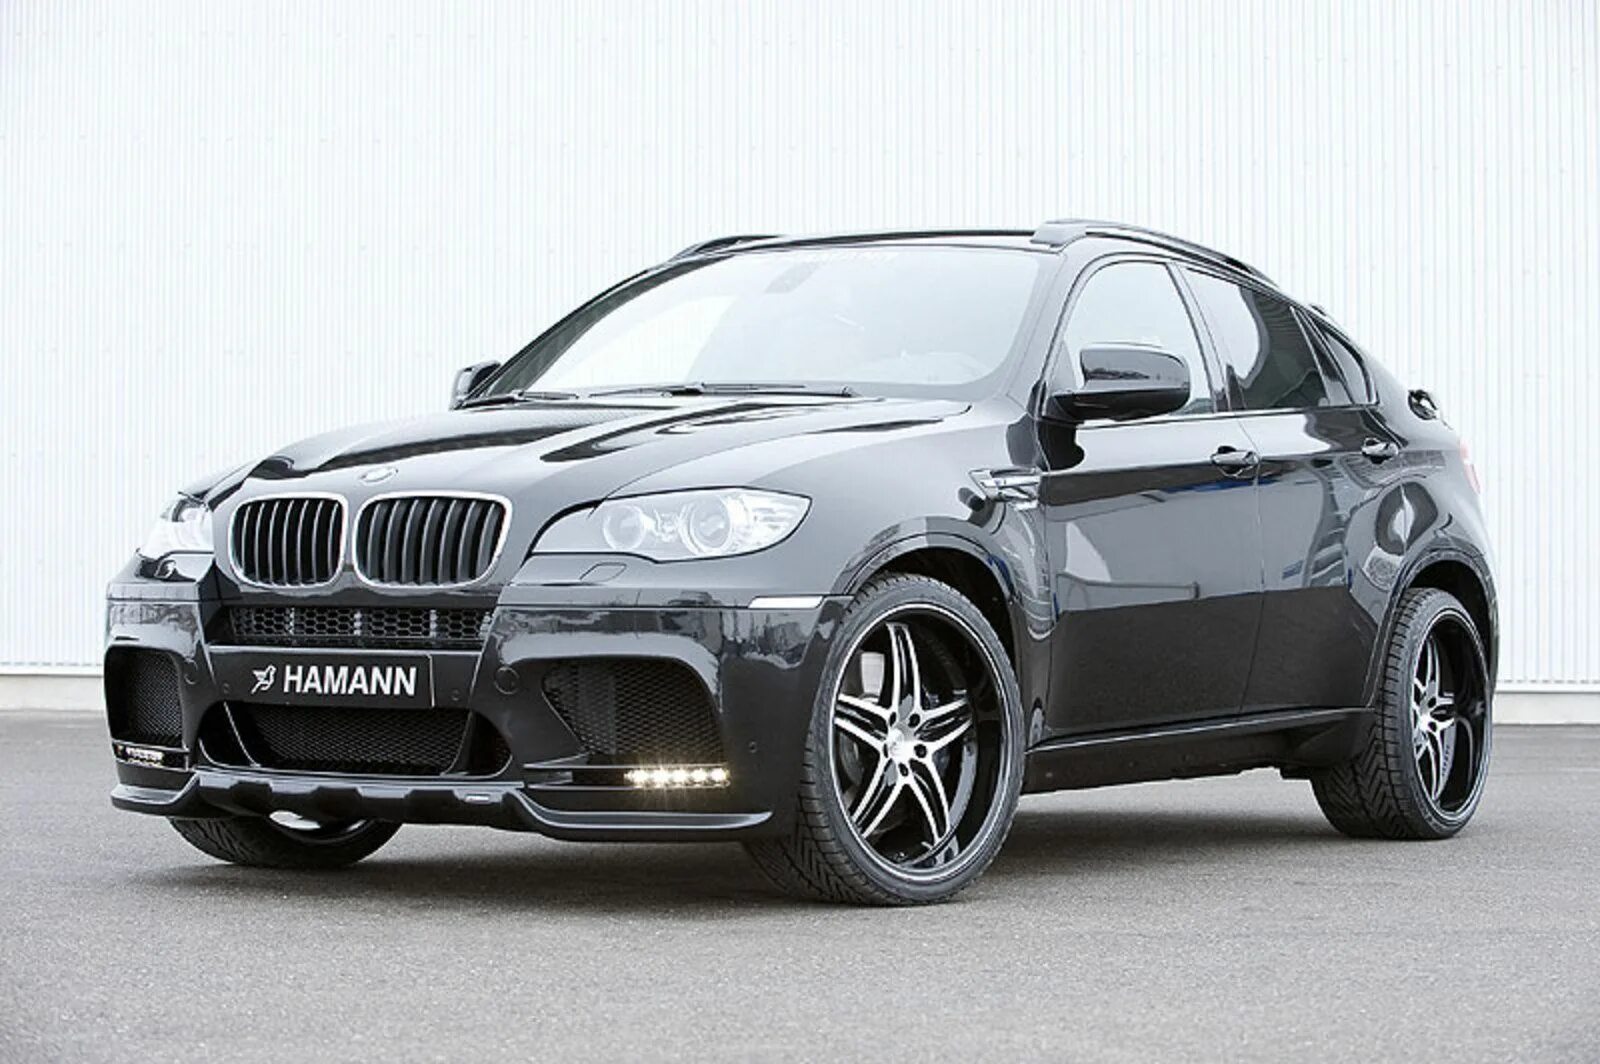 X 6 20 10. BMW e71 x6m Hamann. БМВ x6 e71 Hamann. BMW x6 e71 Hamann EVO M. X6m e71 Hamann.